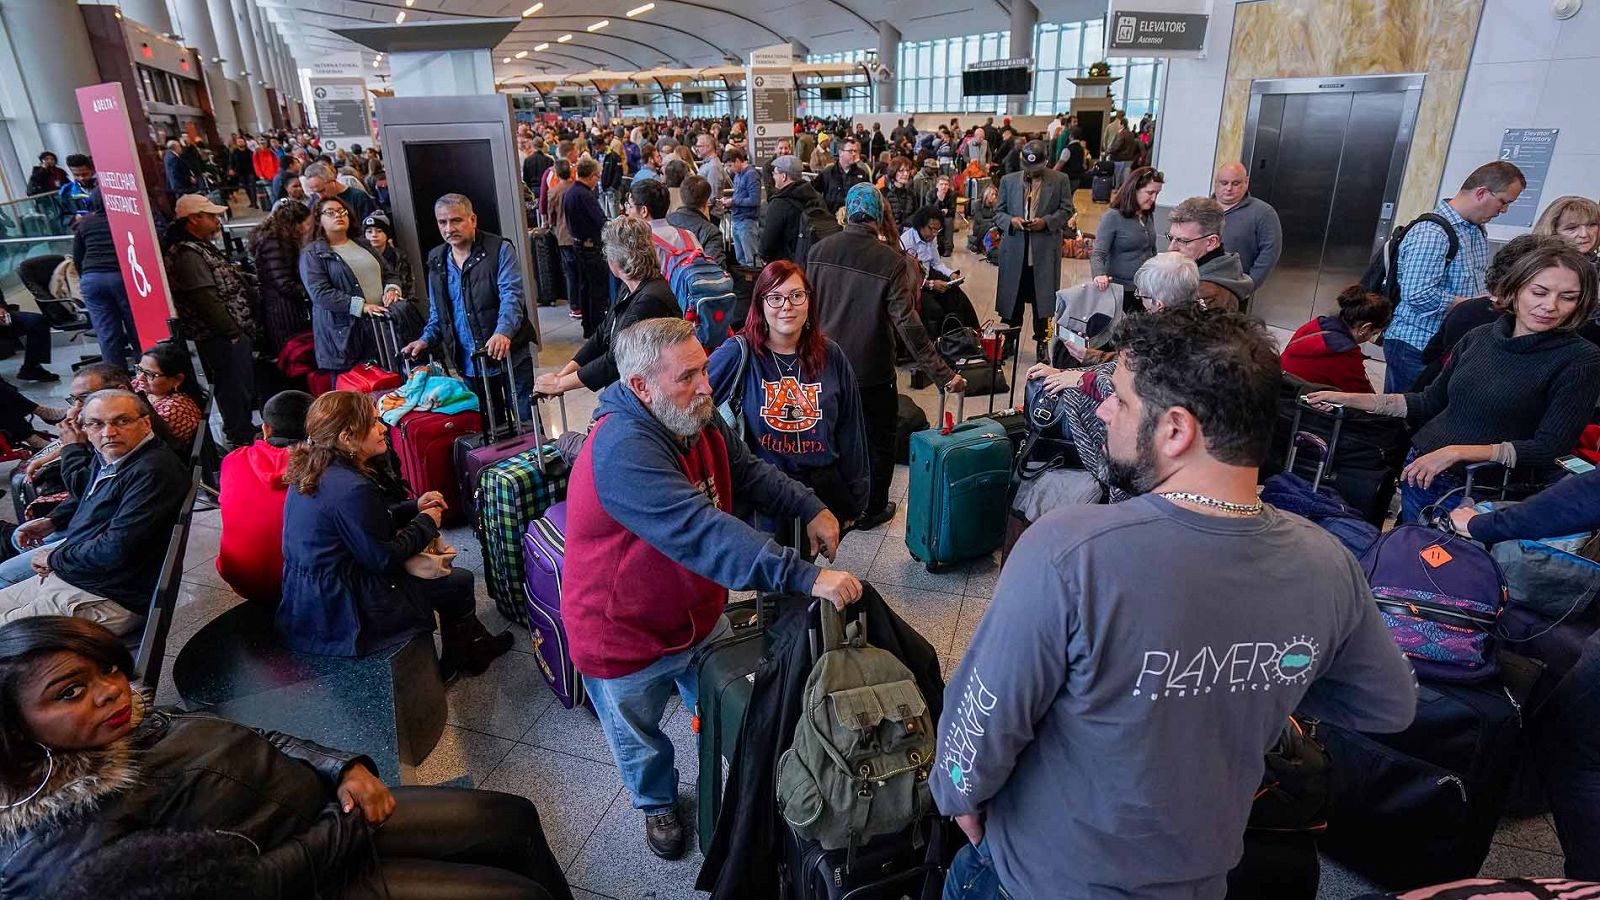 Apagón en el aeropuerto de Atlanta - Más de 275.000 pasajeros afectados